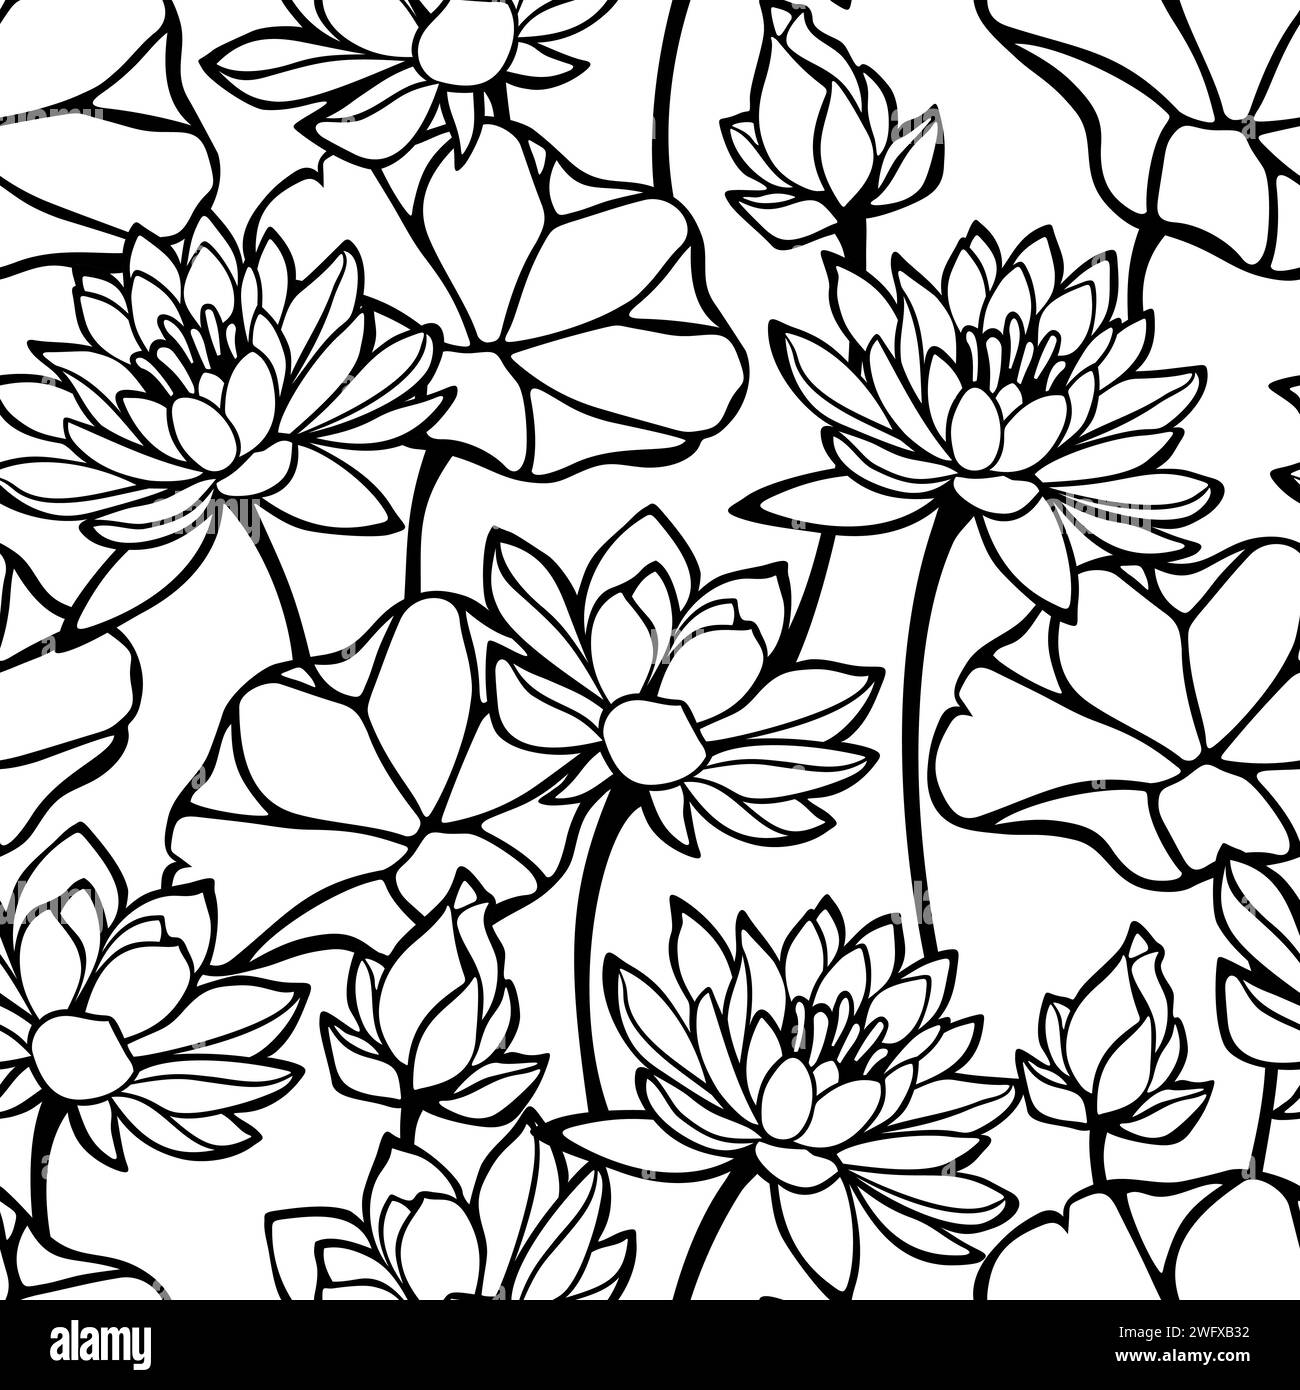 Motif floral sans couture avec fleurs et feuilles de lotus. Motif dessin au trait noir et blanc. Imprimé fleuri vectoriel Illustration de Vecteur